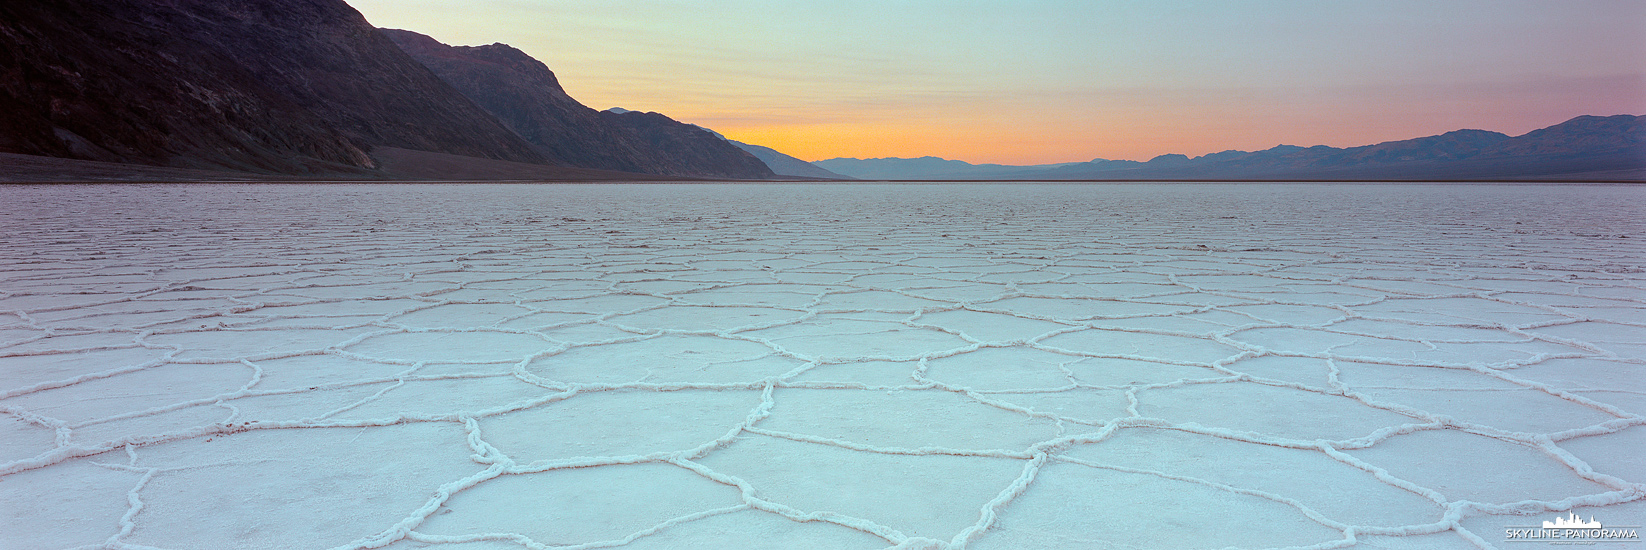 Sonnenuntergang am Bad Water Basin im Death Valley Nationalpark, die Stelle ist bekannt dafür, dass sie der tiefste Punkt Nordamerikas ist. Außerdem empfiehlt es sich vom Besucherparkplatz aus eine kleine Wanderung auf die große Salzfläche, mit den beeindruckenden Strukturen aus Salzkristallen, zu unternehmen. Mit zunehmender Entfernung vom hektischen Treiben in unmittelbarer Nähe zum Parkplatz, nimmt die Stille an diesem magischen Ort zu. Befindet man sich cirka 1 - 2 Meilen auf der Ebene, kann man die absolute Geräuschlosigkeit genießen, natürlich nur, wenn man sich nicht bewegt und die Salzkristalle unter den Schuhsohlen aufhören zu knirschen. 